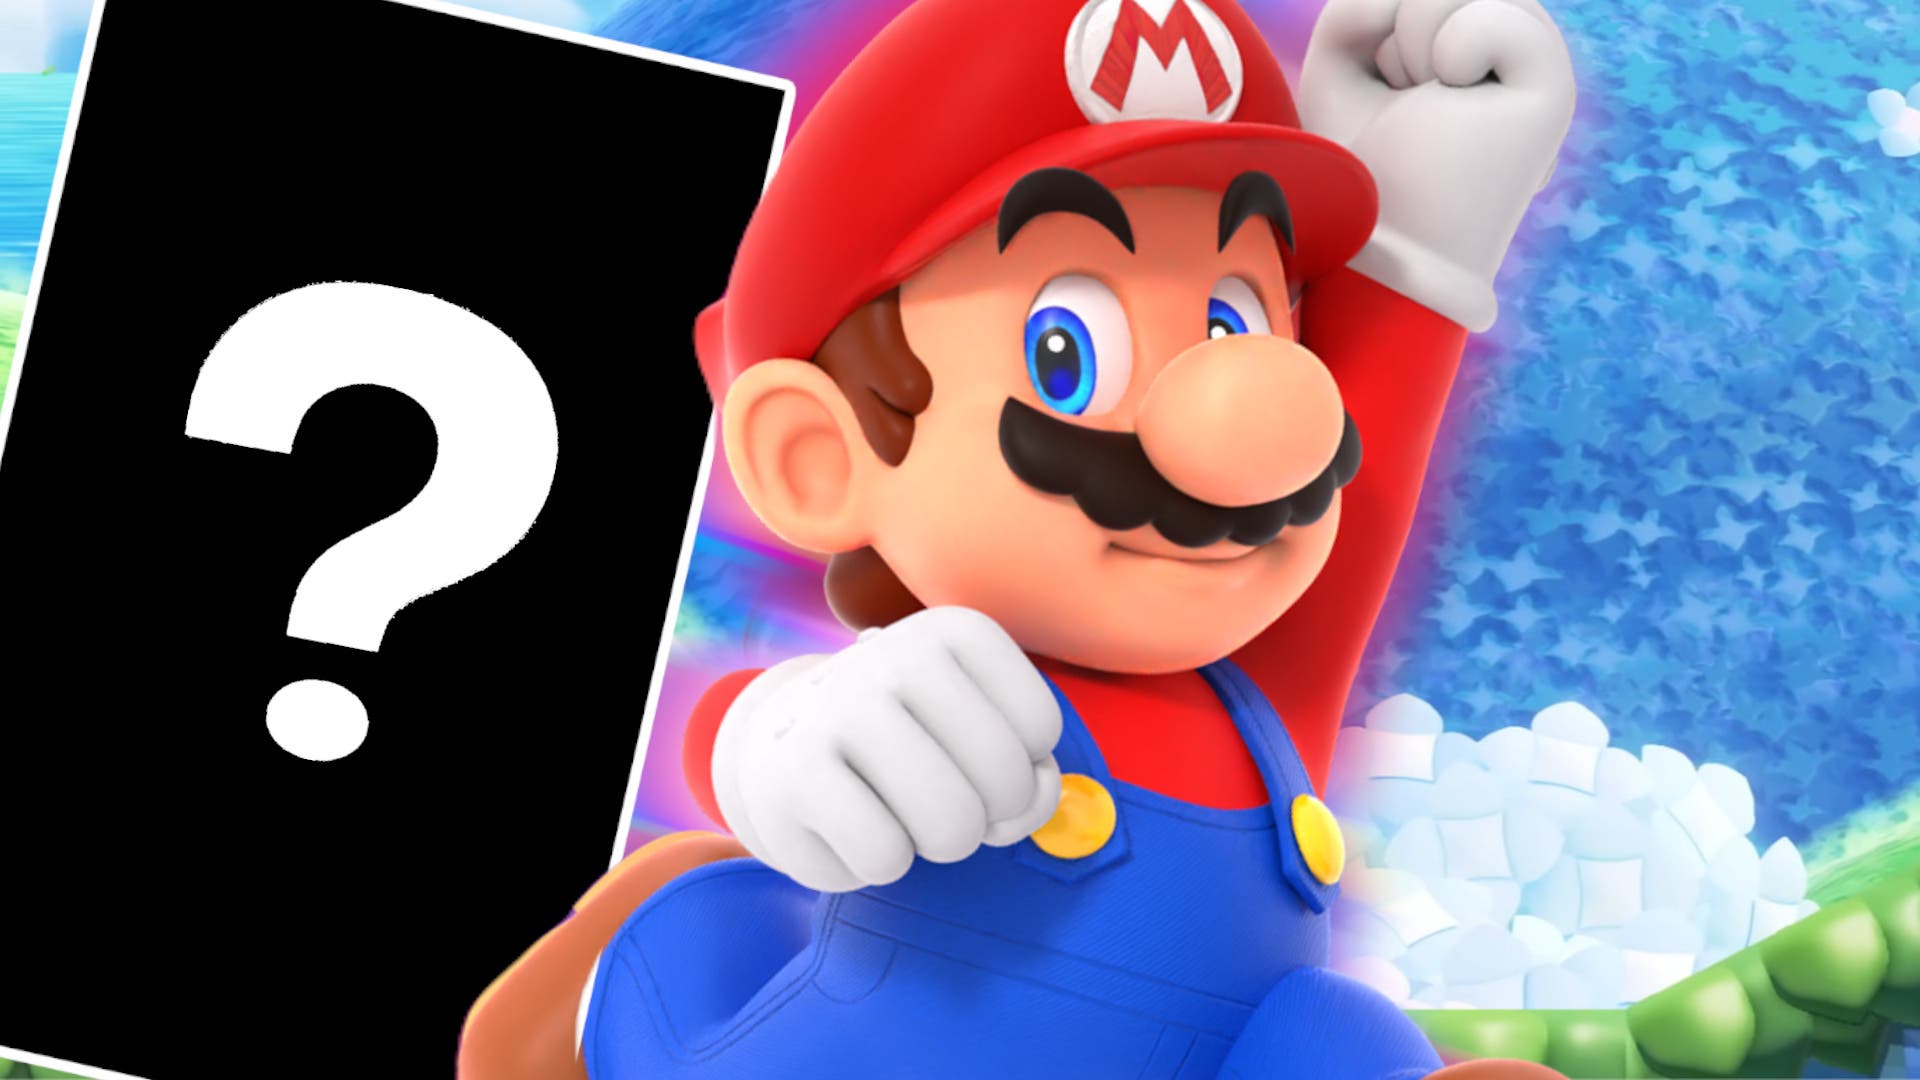 Análisis Super Mario Bros. Wonder: Nintendo lo ha vuelto a hacer